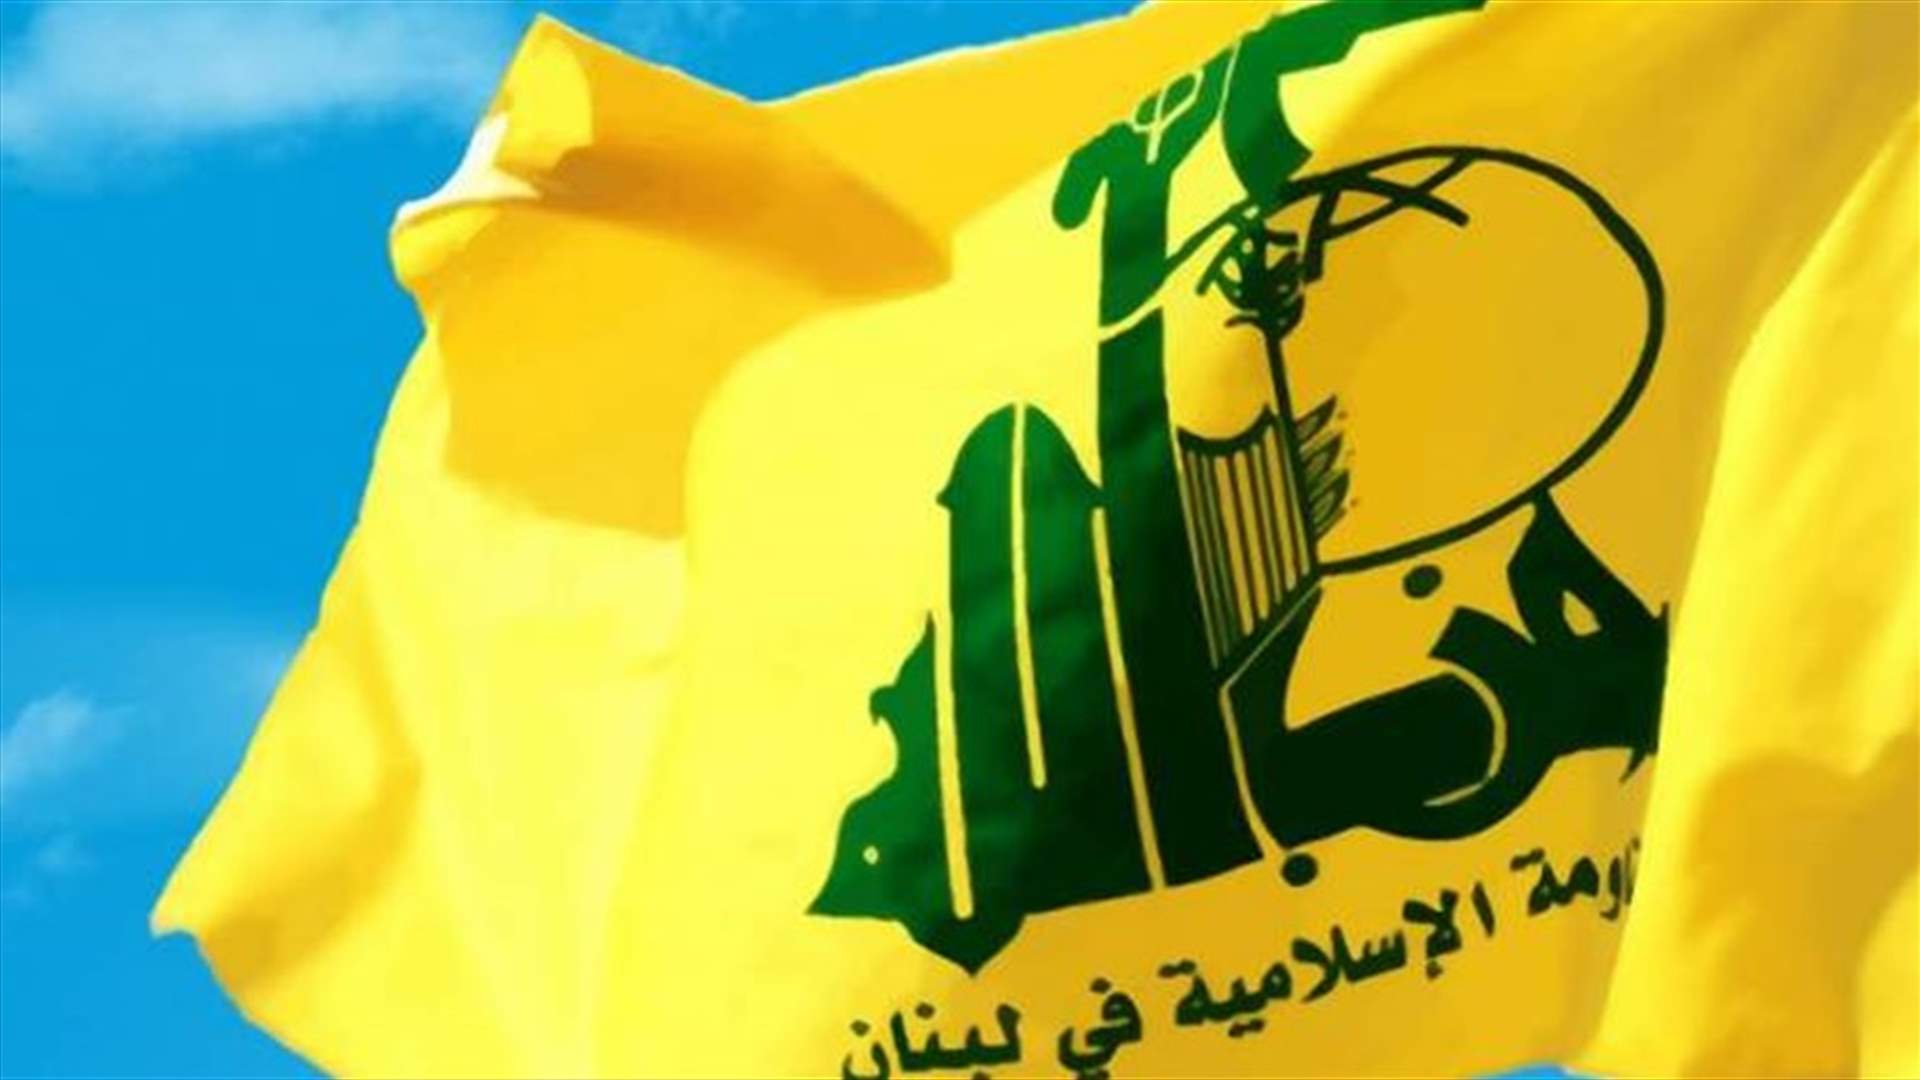 حزب الله: عملية مستعمرة عوفرا تأكيد على تصميم الشعب الفلسطيني على تحرير أرضه